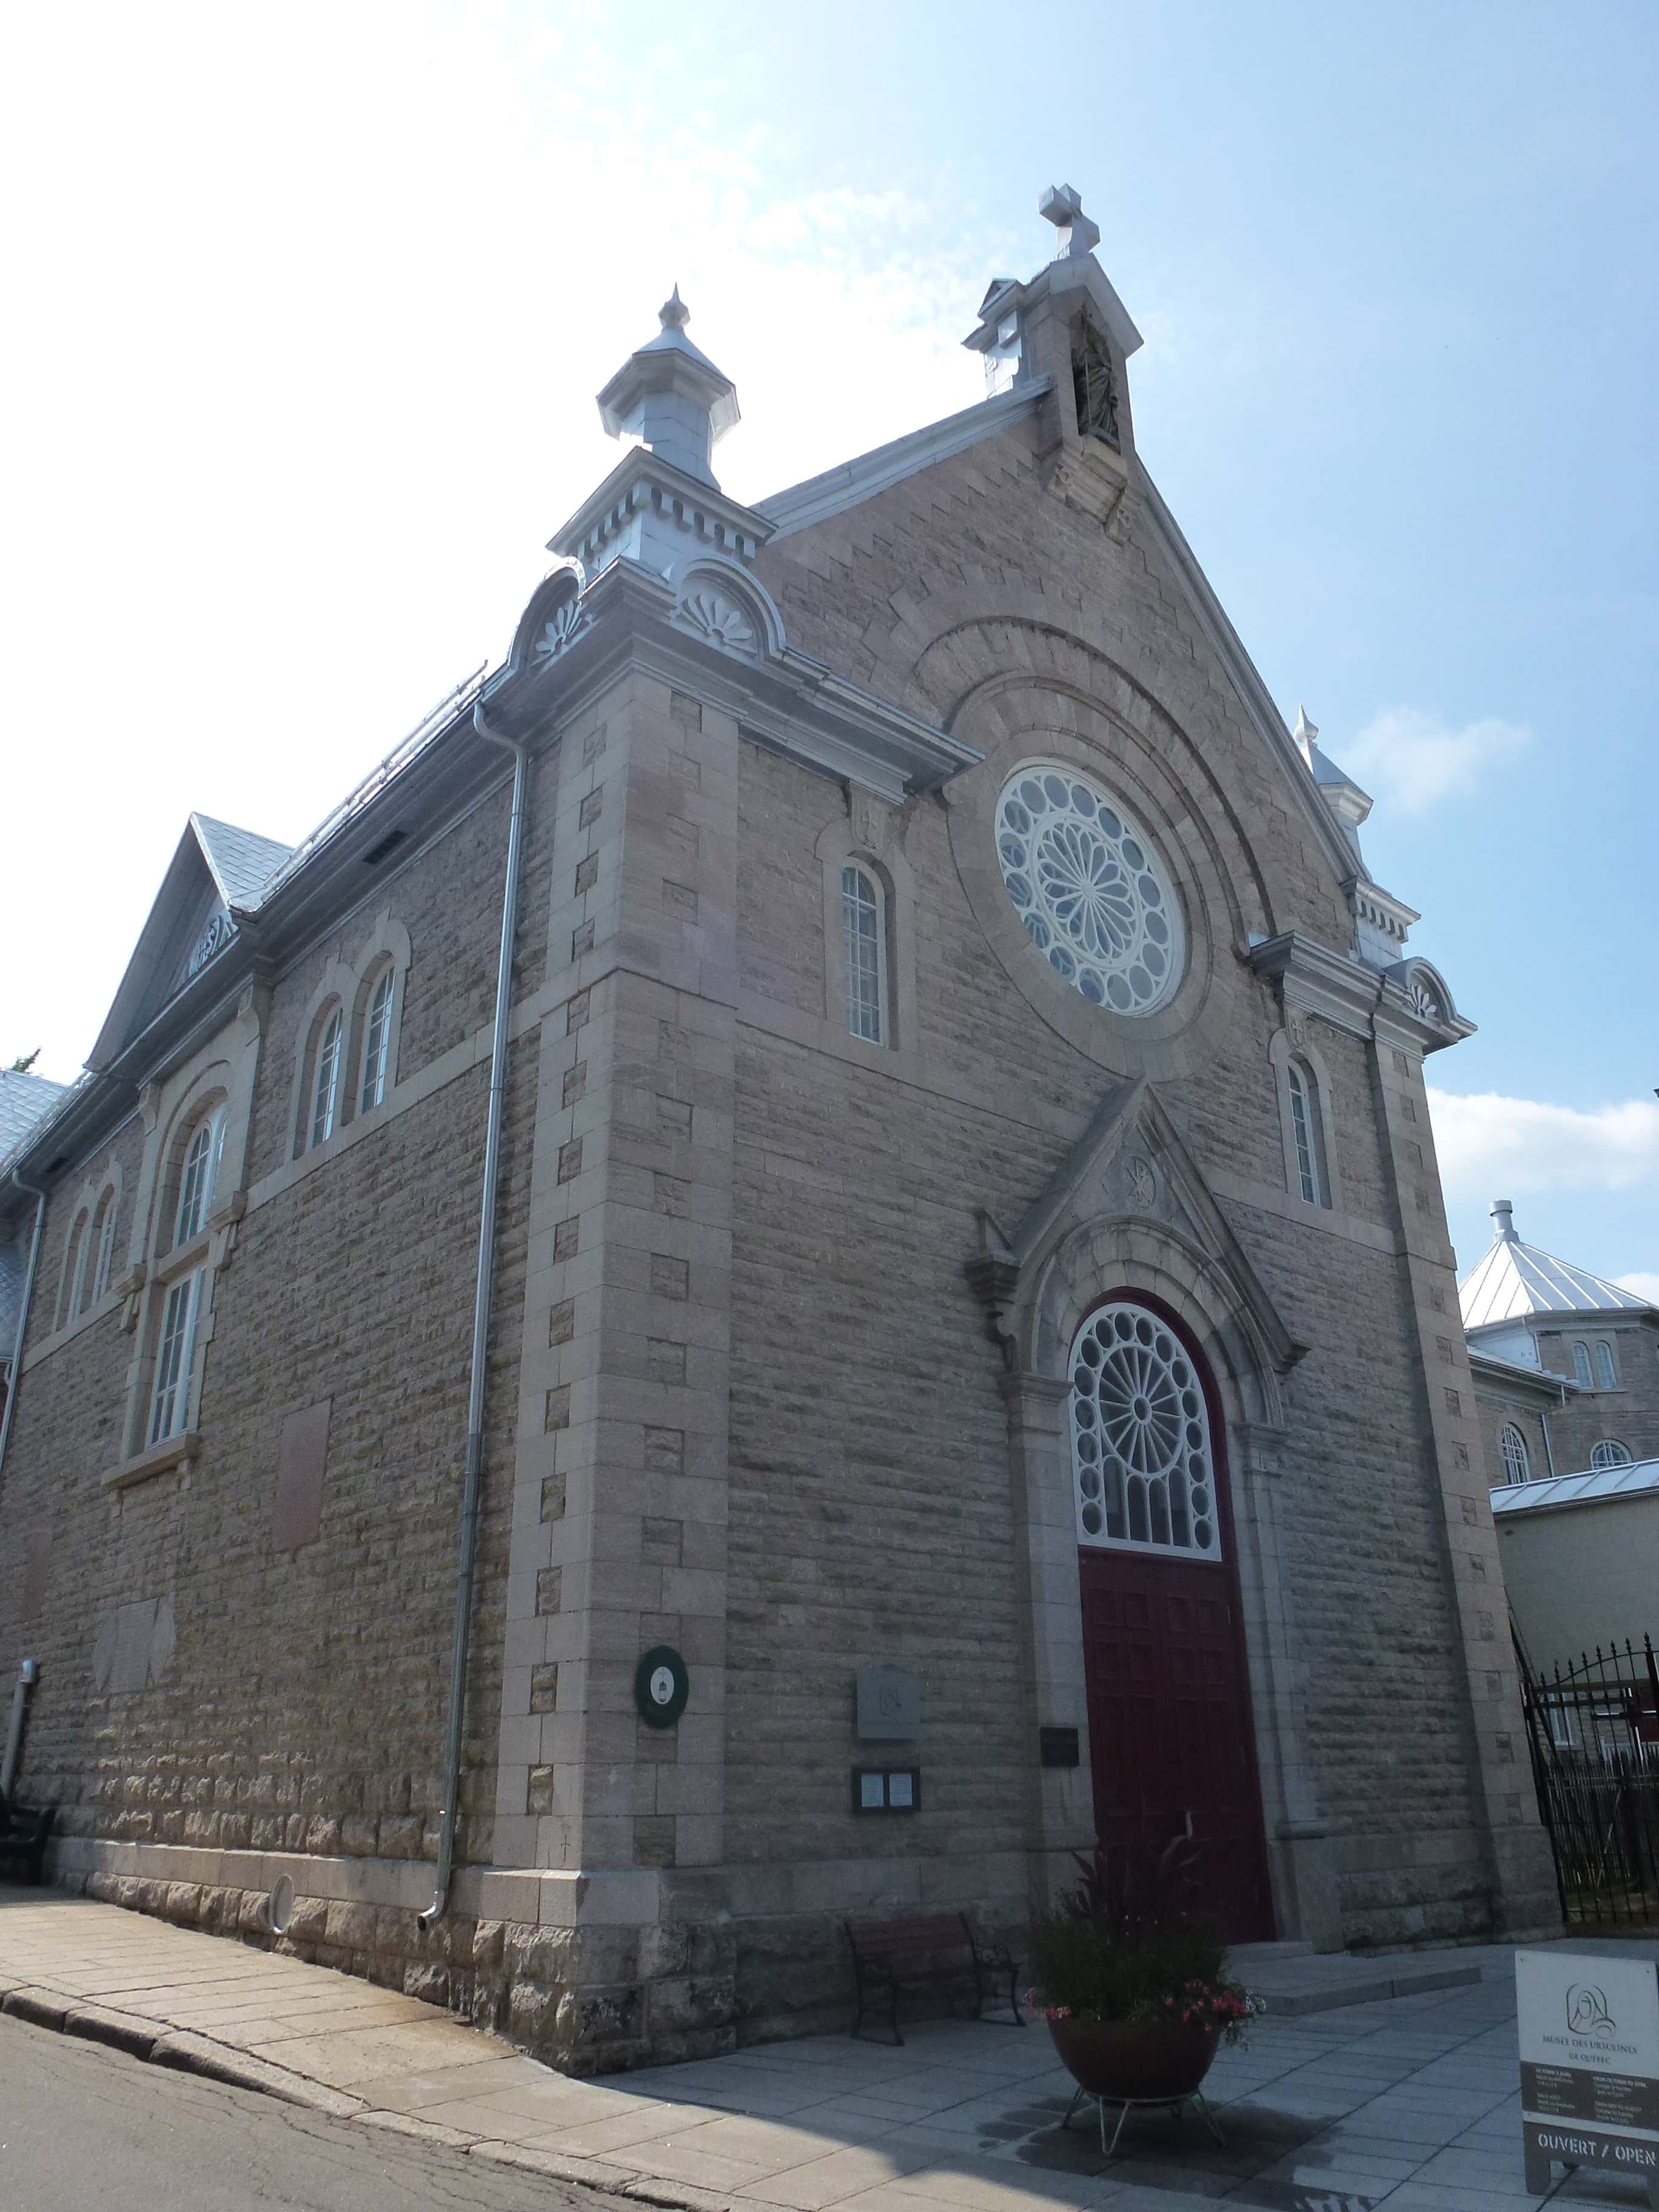 Ursuline Convent in Québec, Canada